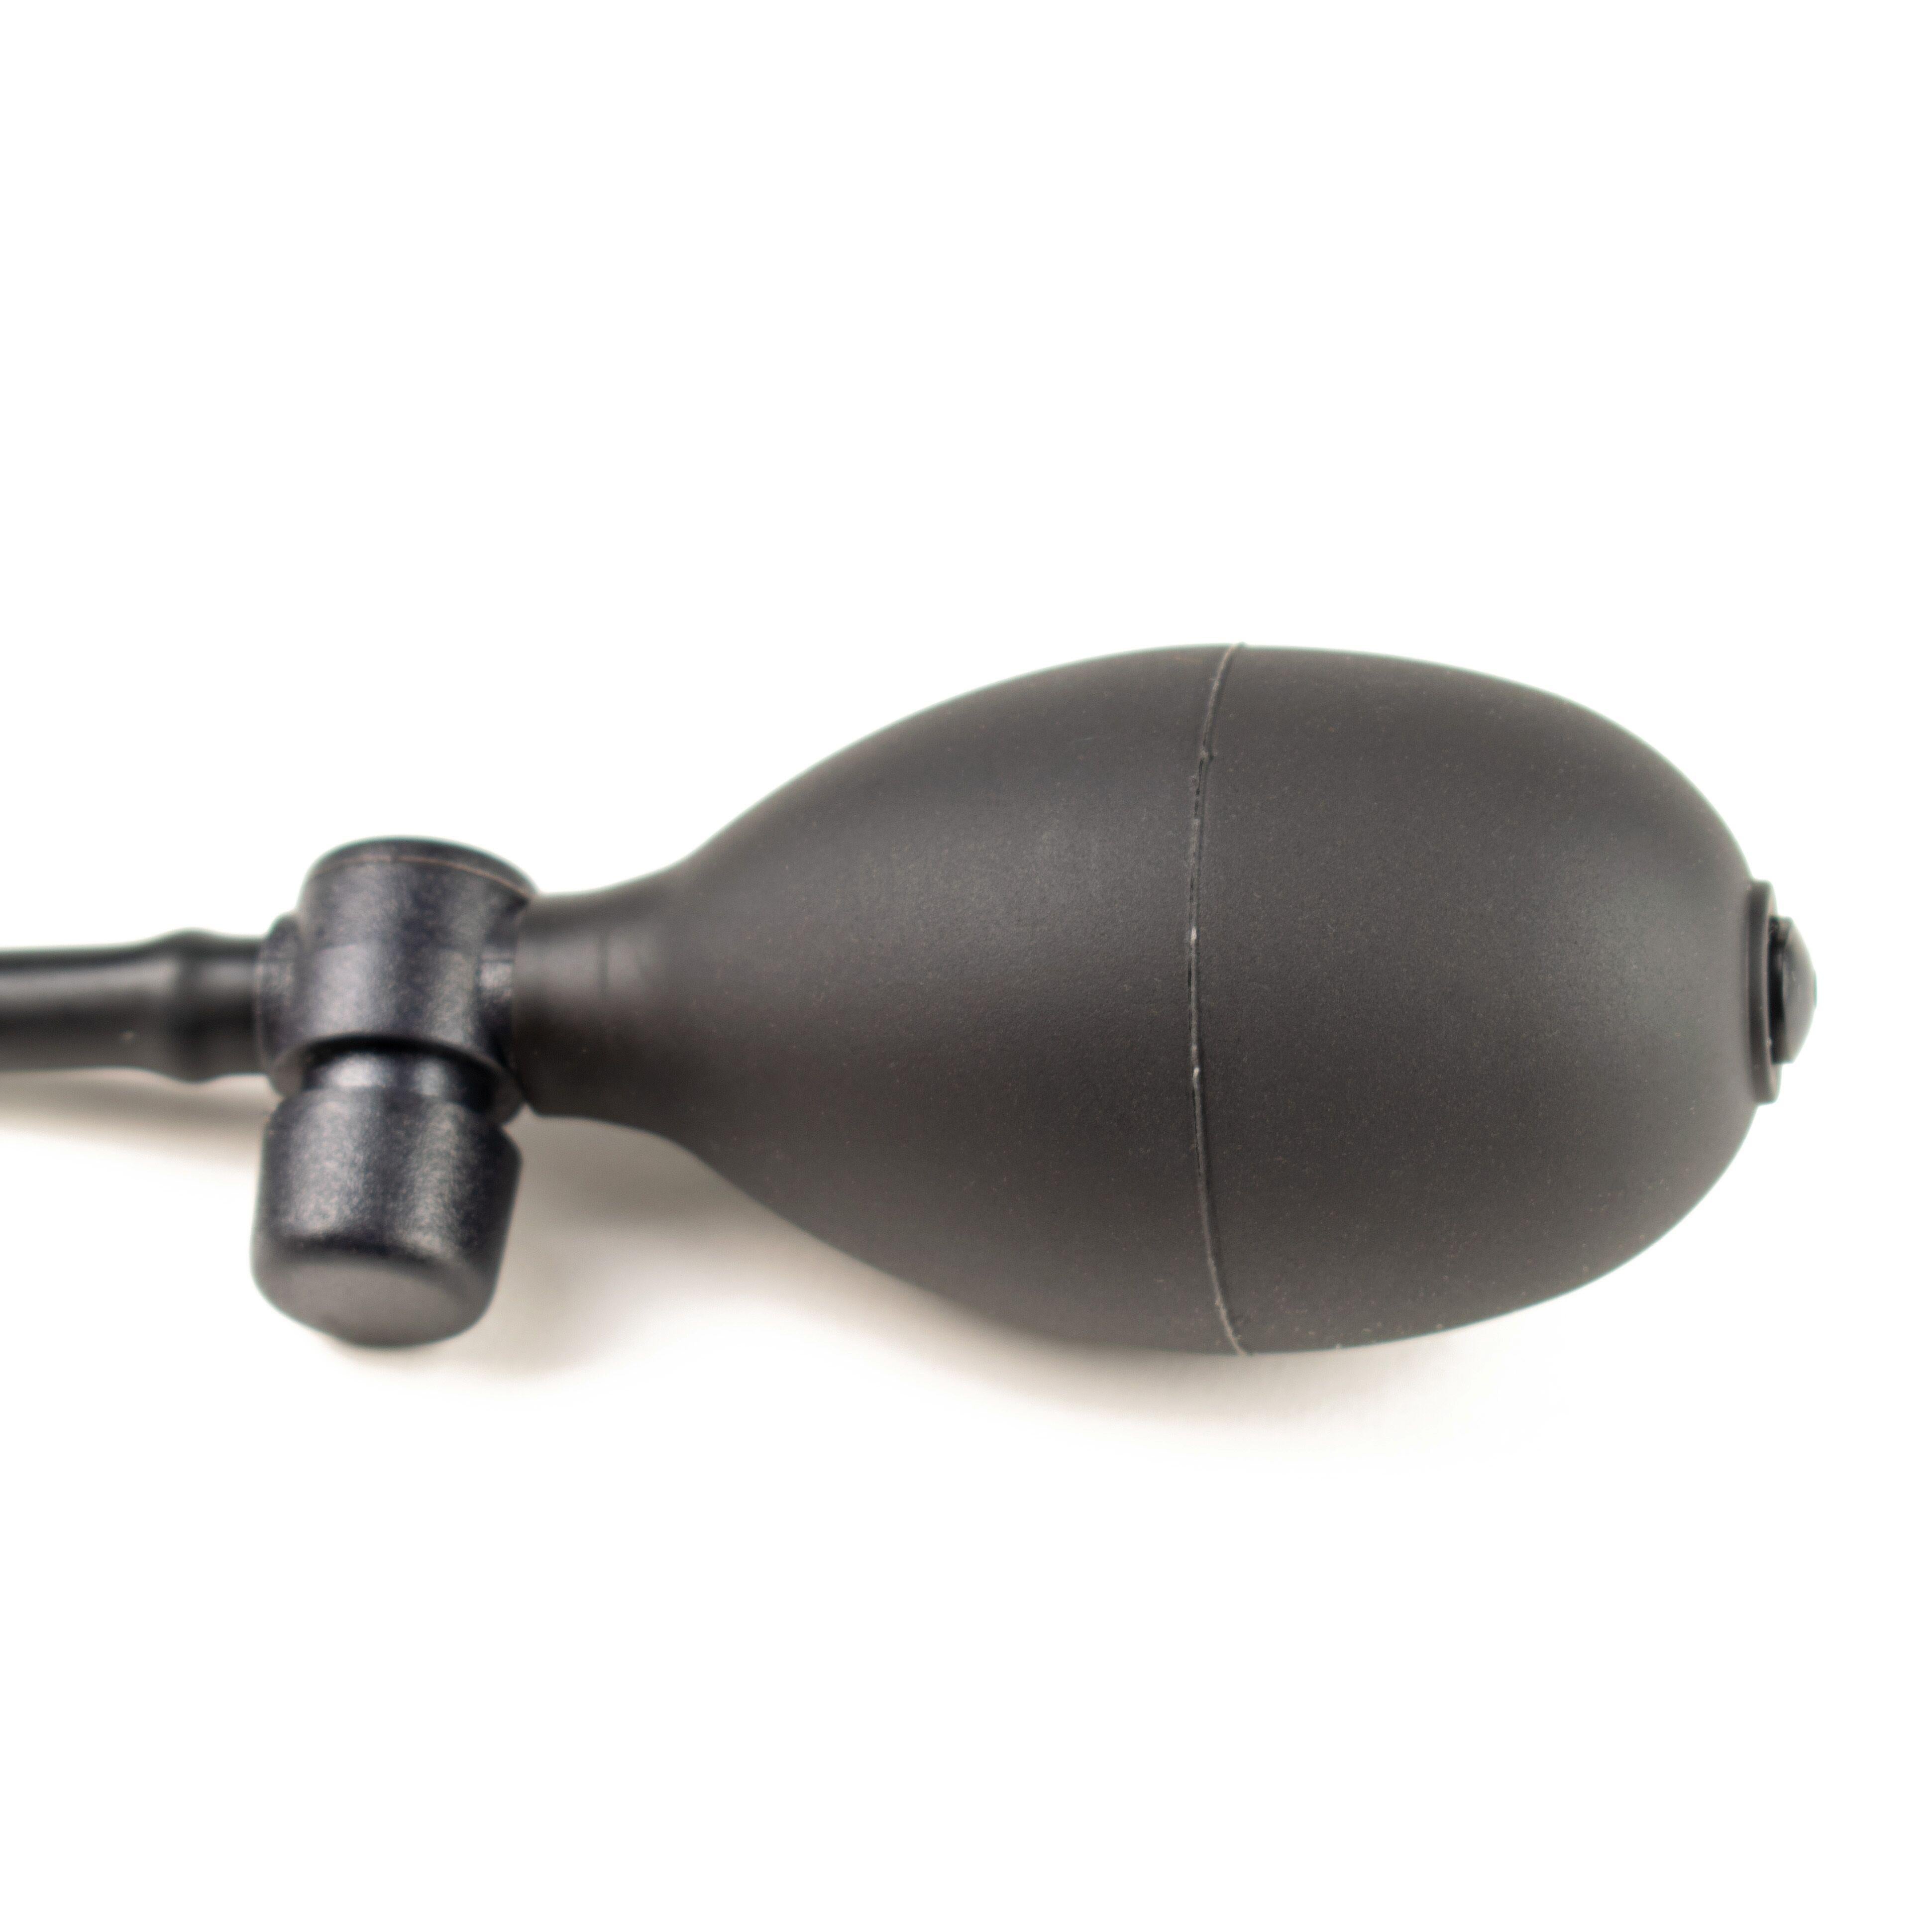 Rubberfashion Latex Butt Plug - Anal Plug XL - aufblasbarer Analplug mit Pumpe für Frauen und Männer